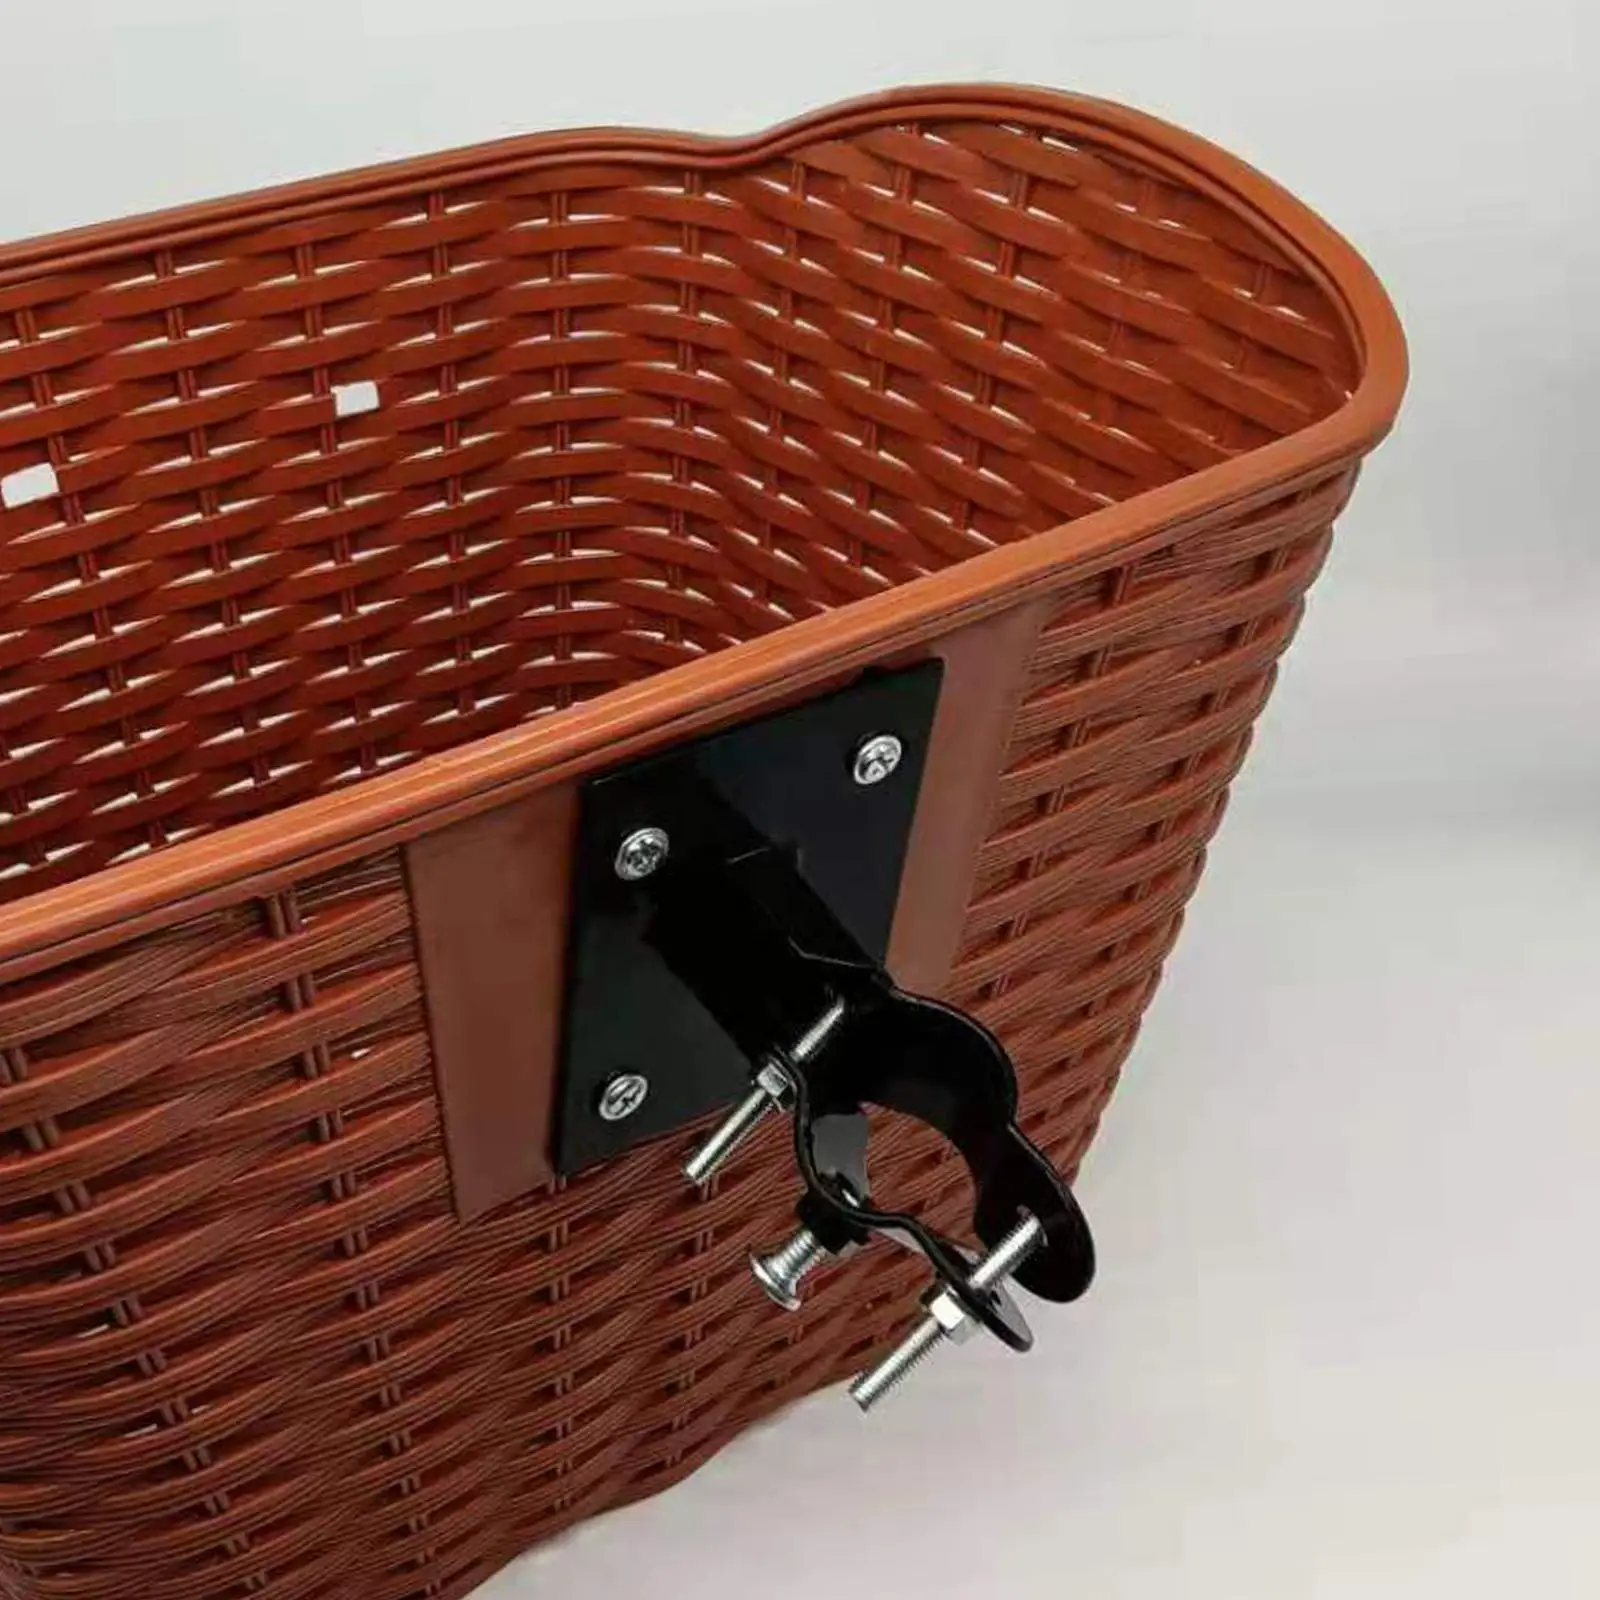 Bike Basket Fixed Holder Bicycle Basket Attachment Front Basket Hanger for Folding Bike